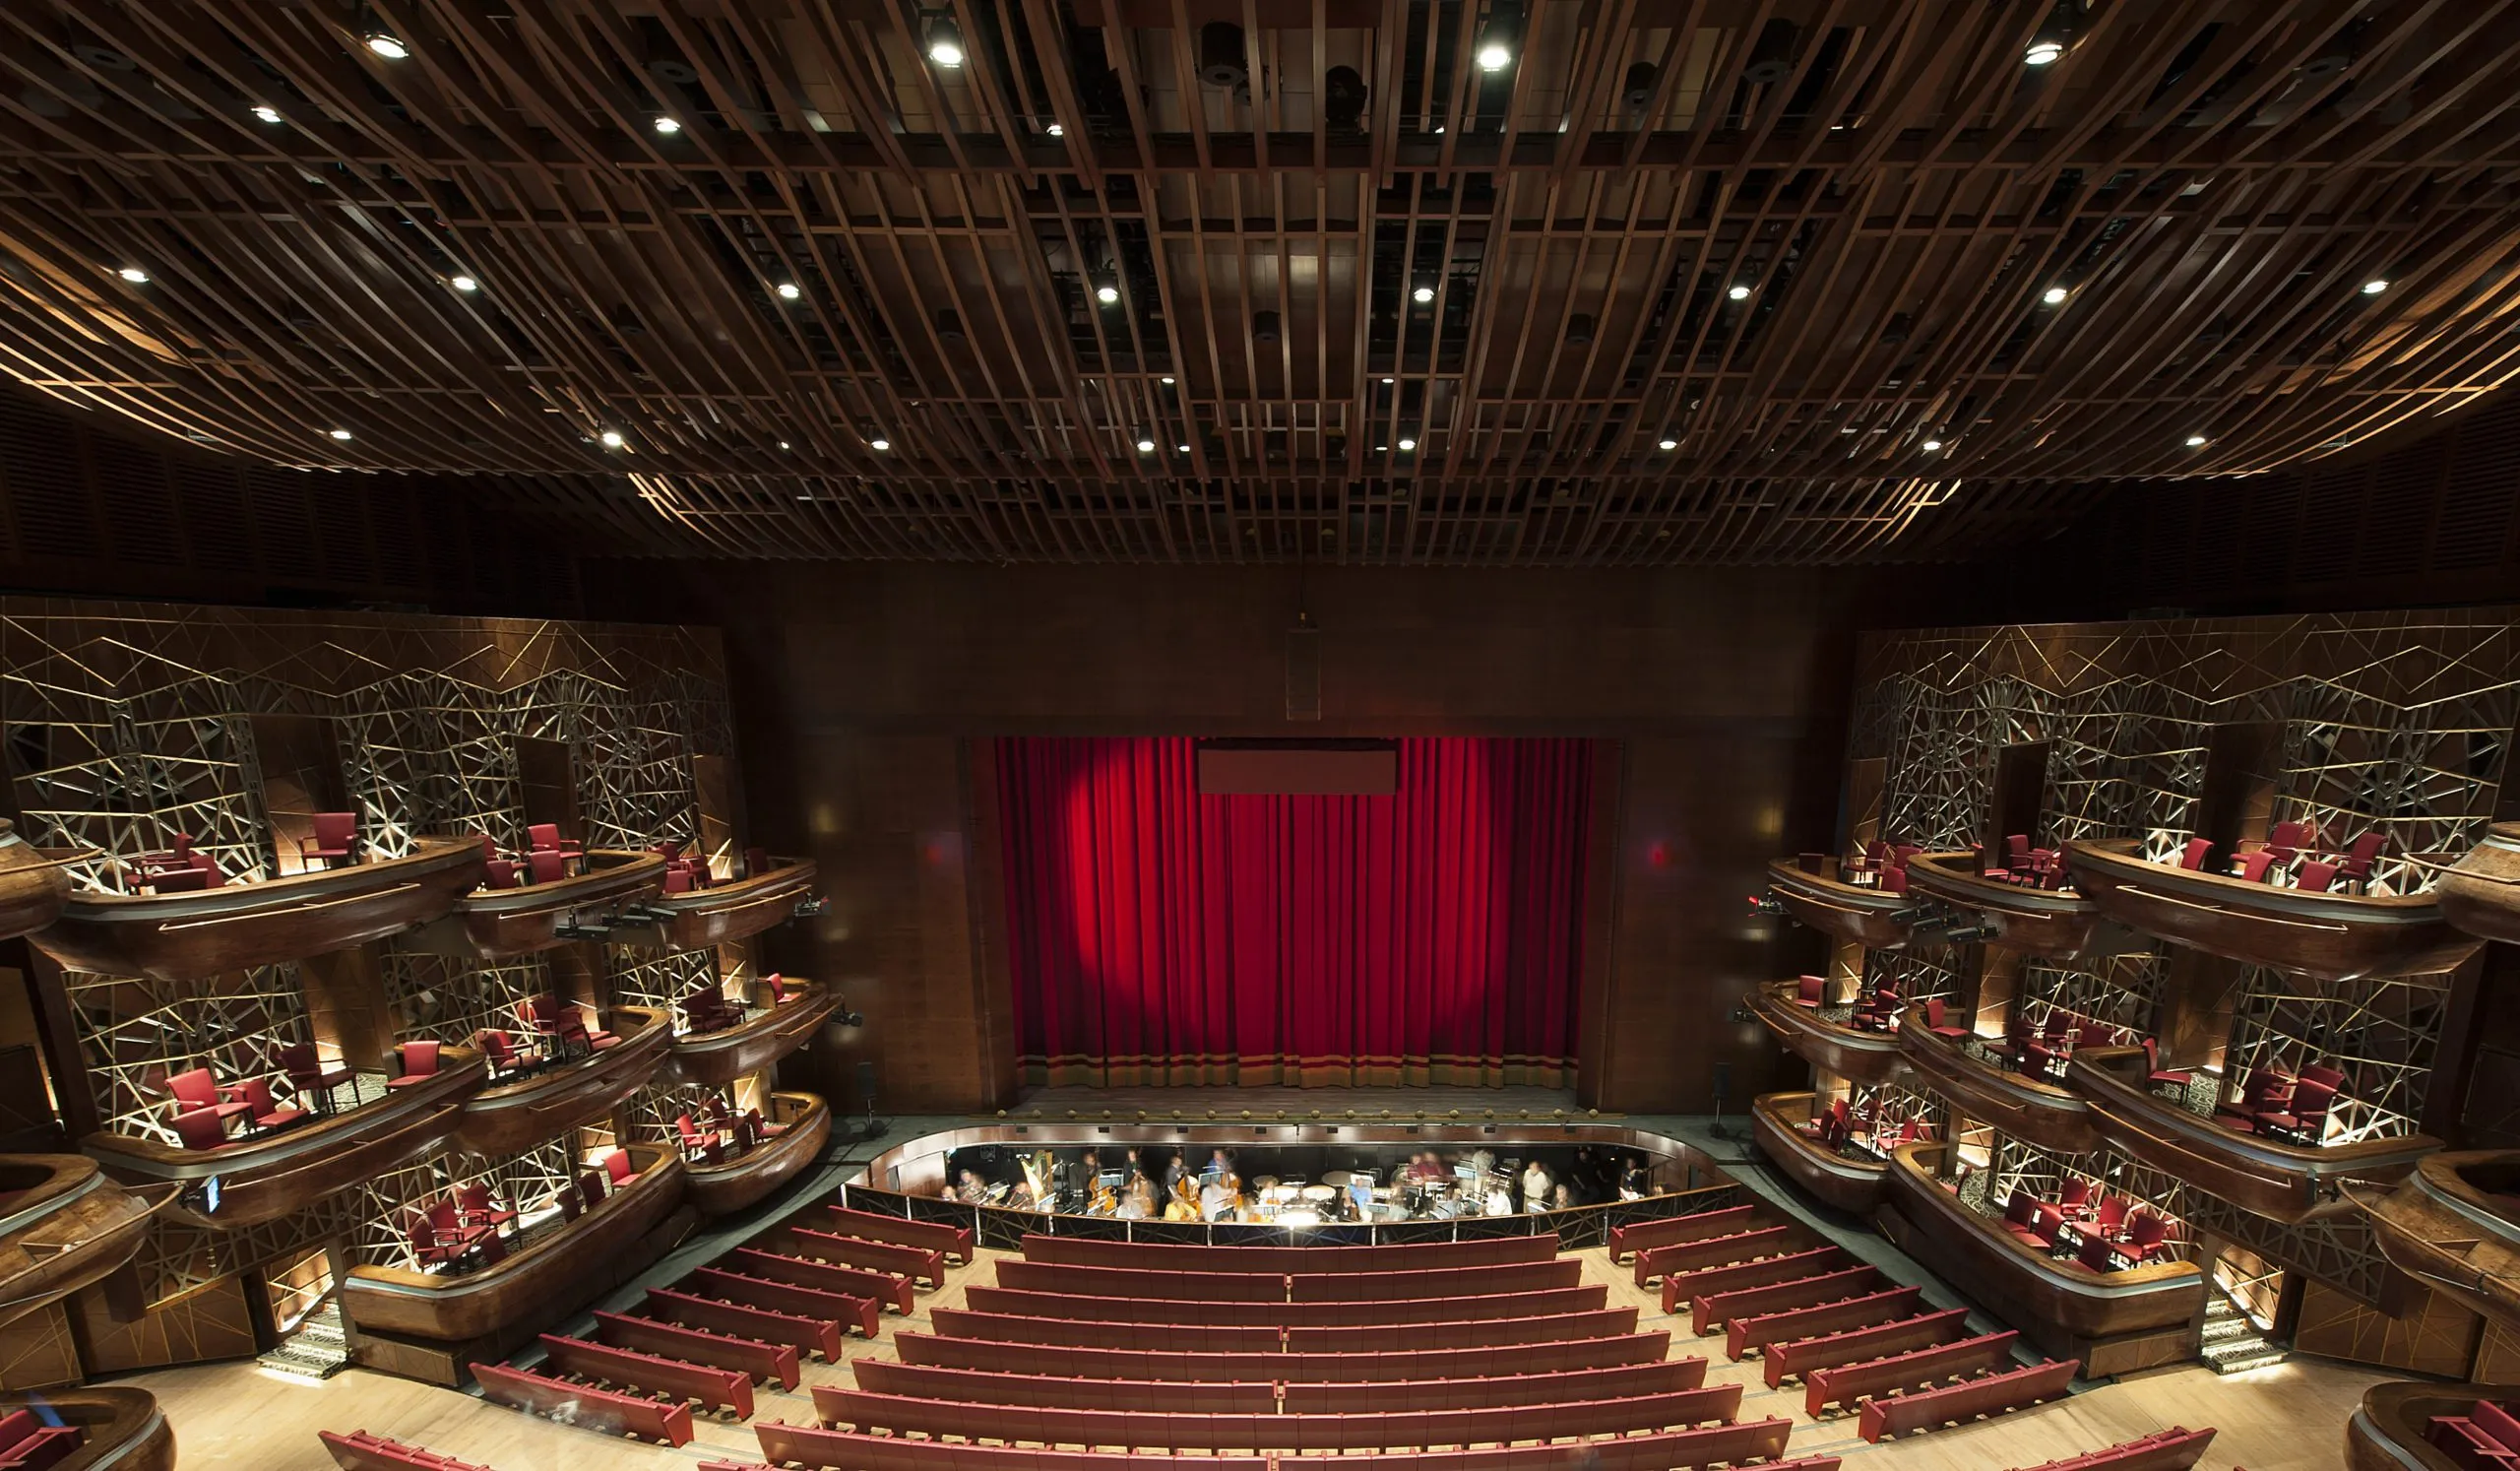 Опера в Дубае – невероятное сочетание архитектурного шедевра и музыкальной экспертизы, создающее неповторимую атмосферу для любителей оперы и балета.